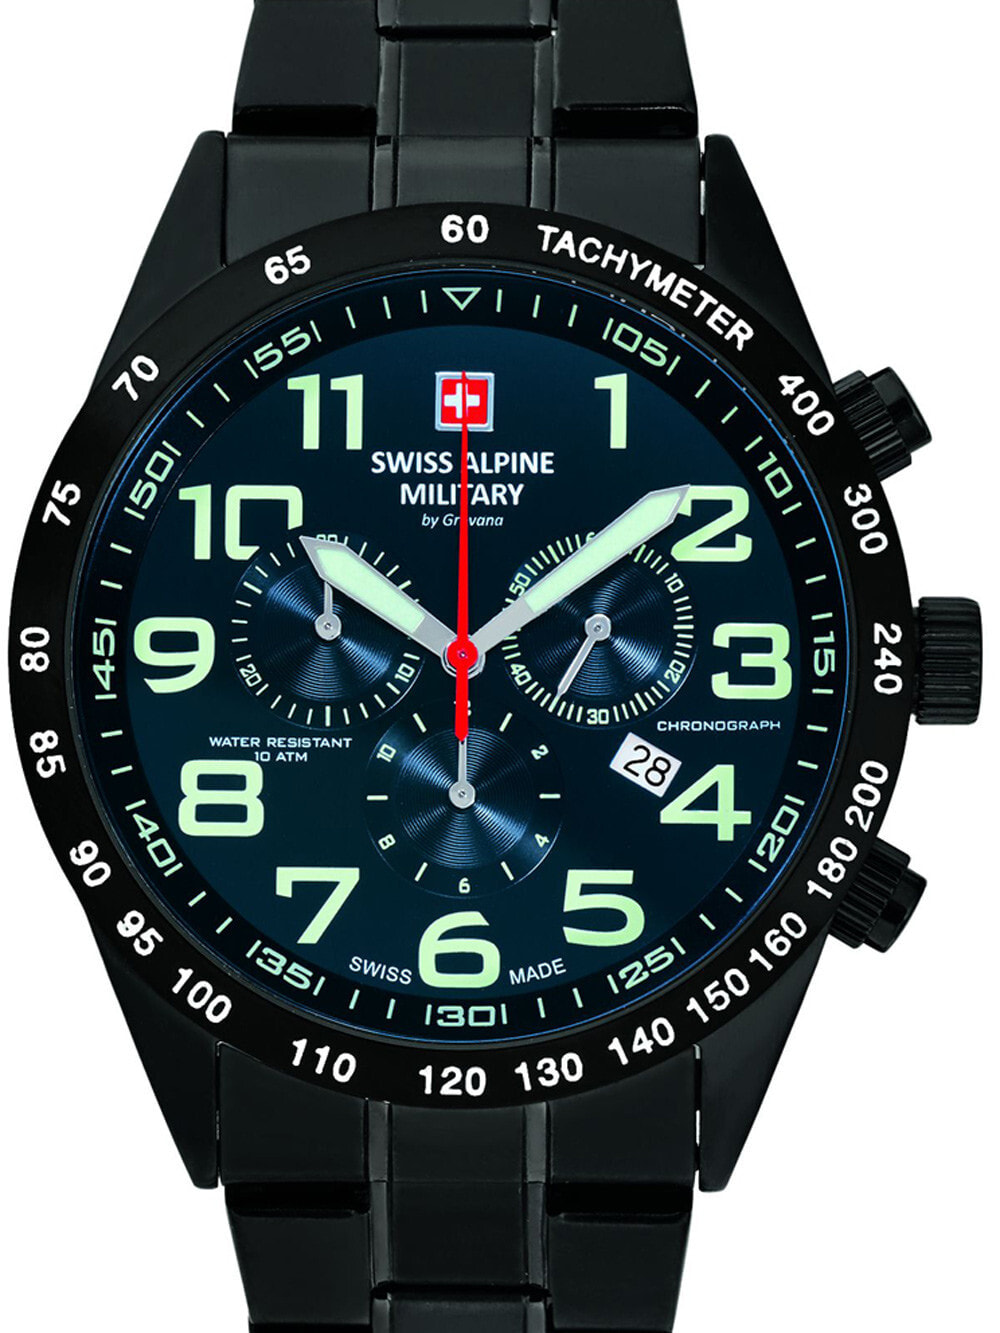 Мужские наручные часы с черным браслетом Swiss Alpine Military 7047.9175 chrono 43mm 10ATM